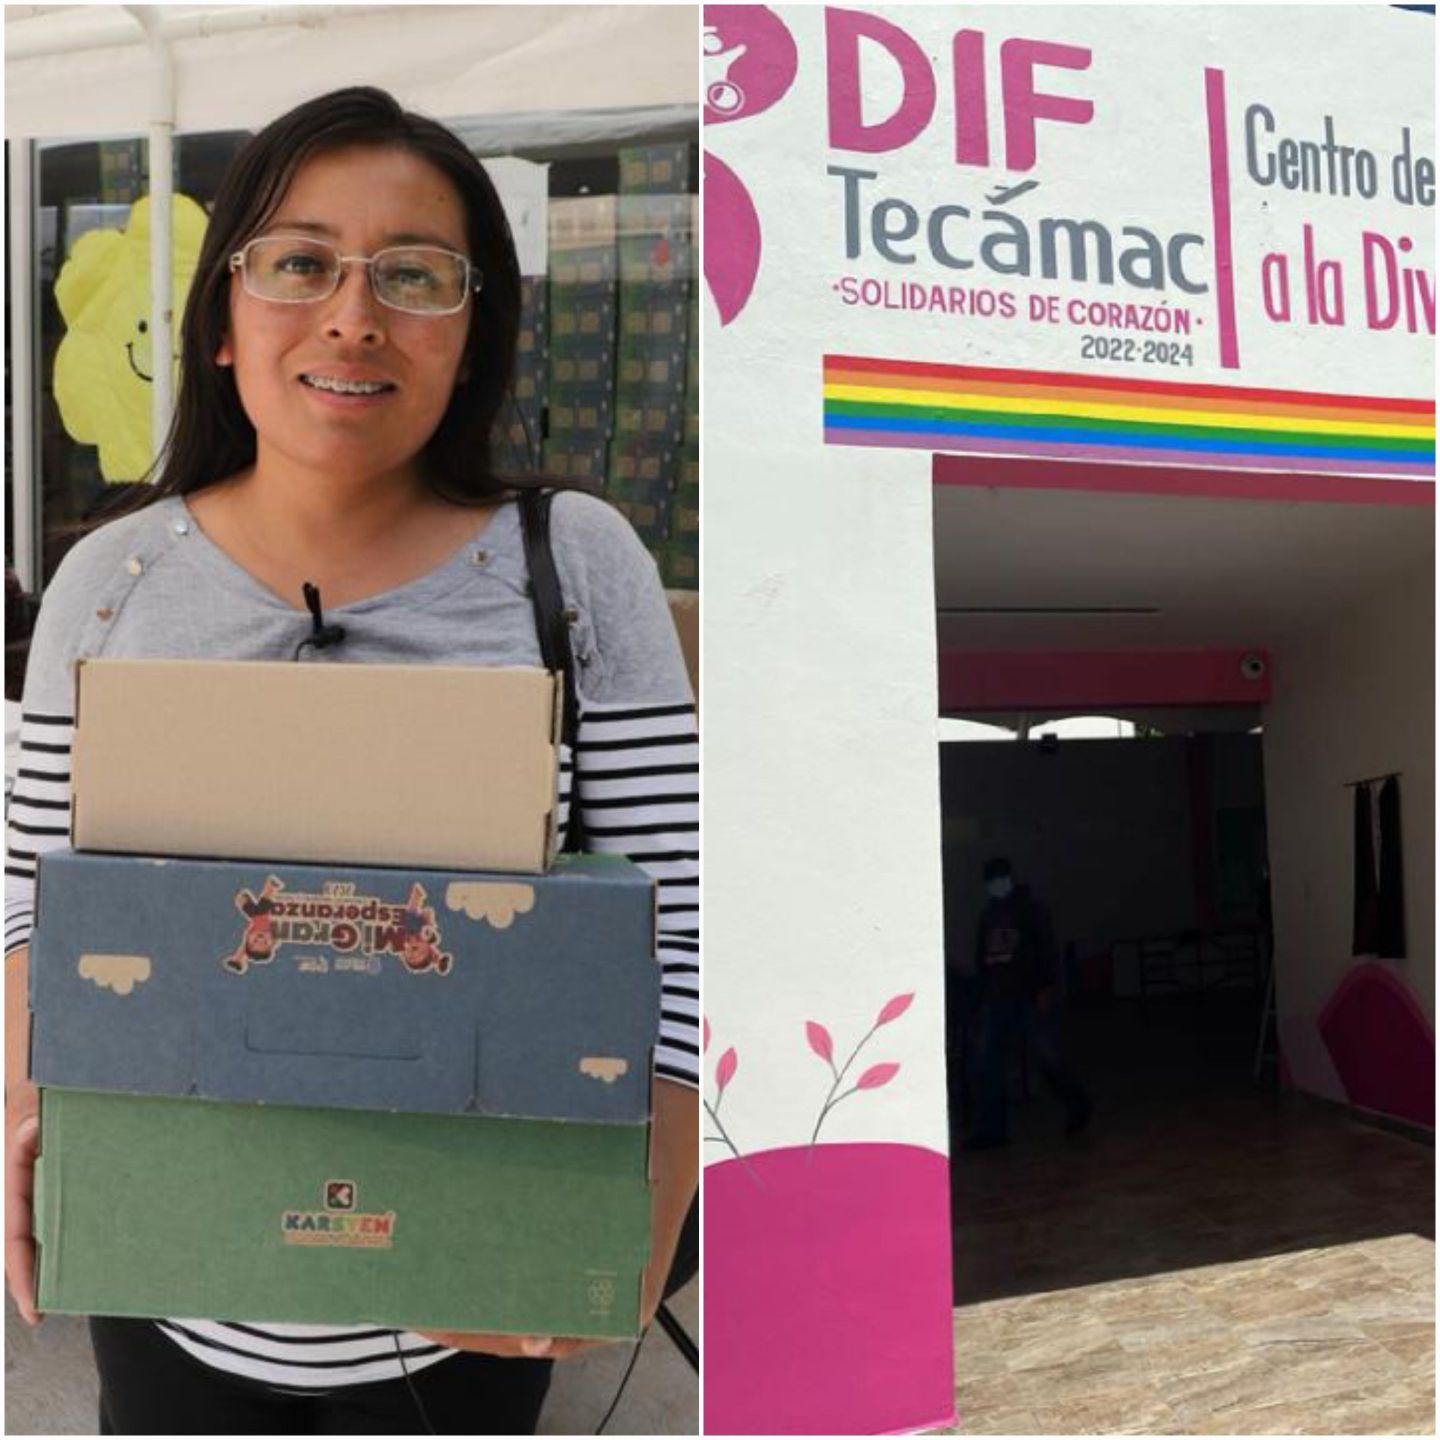 Cientos de miles de beneficiados en Tecámac con programas sociales en cinco años 